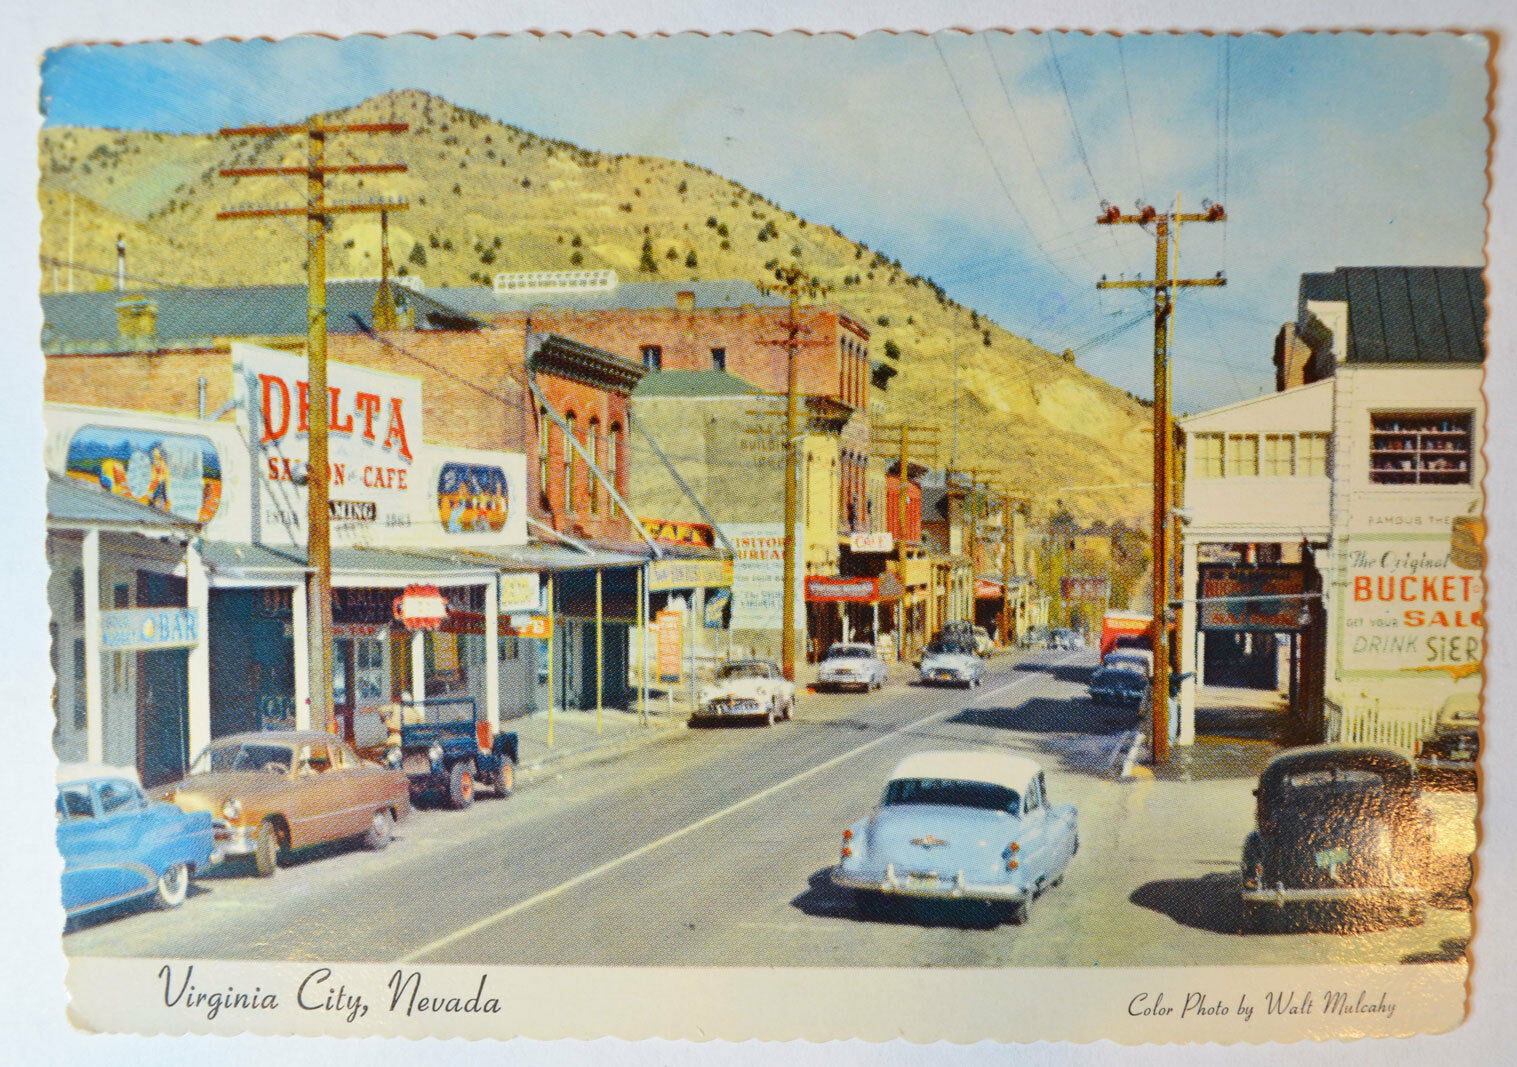 Virginia City, Nevada NV - Old Delta Saloon Gambling Palace 1950s Postcard